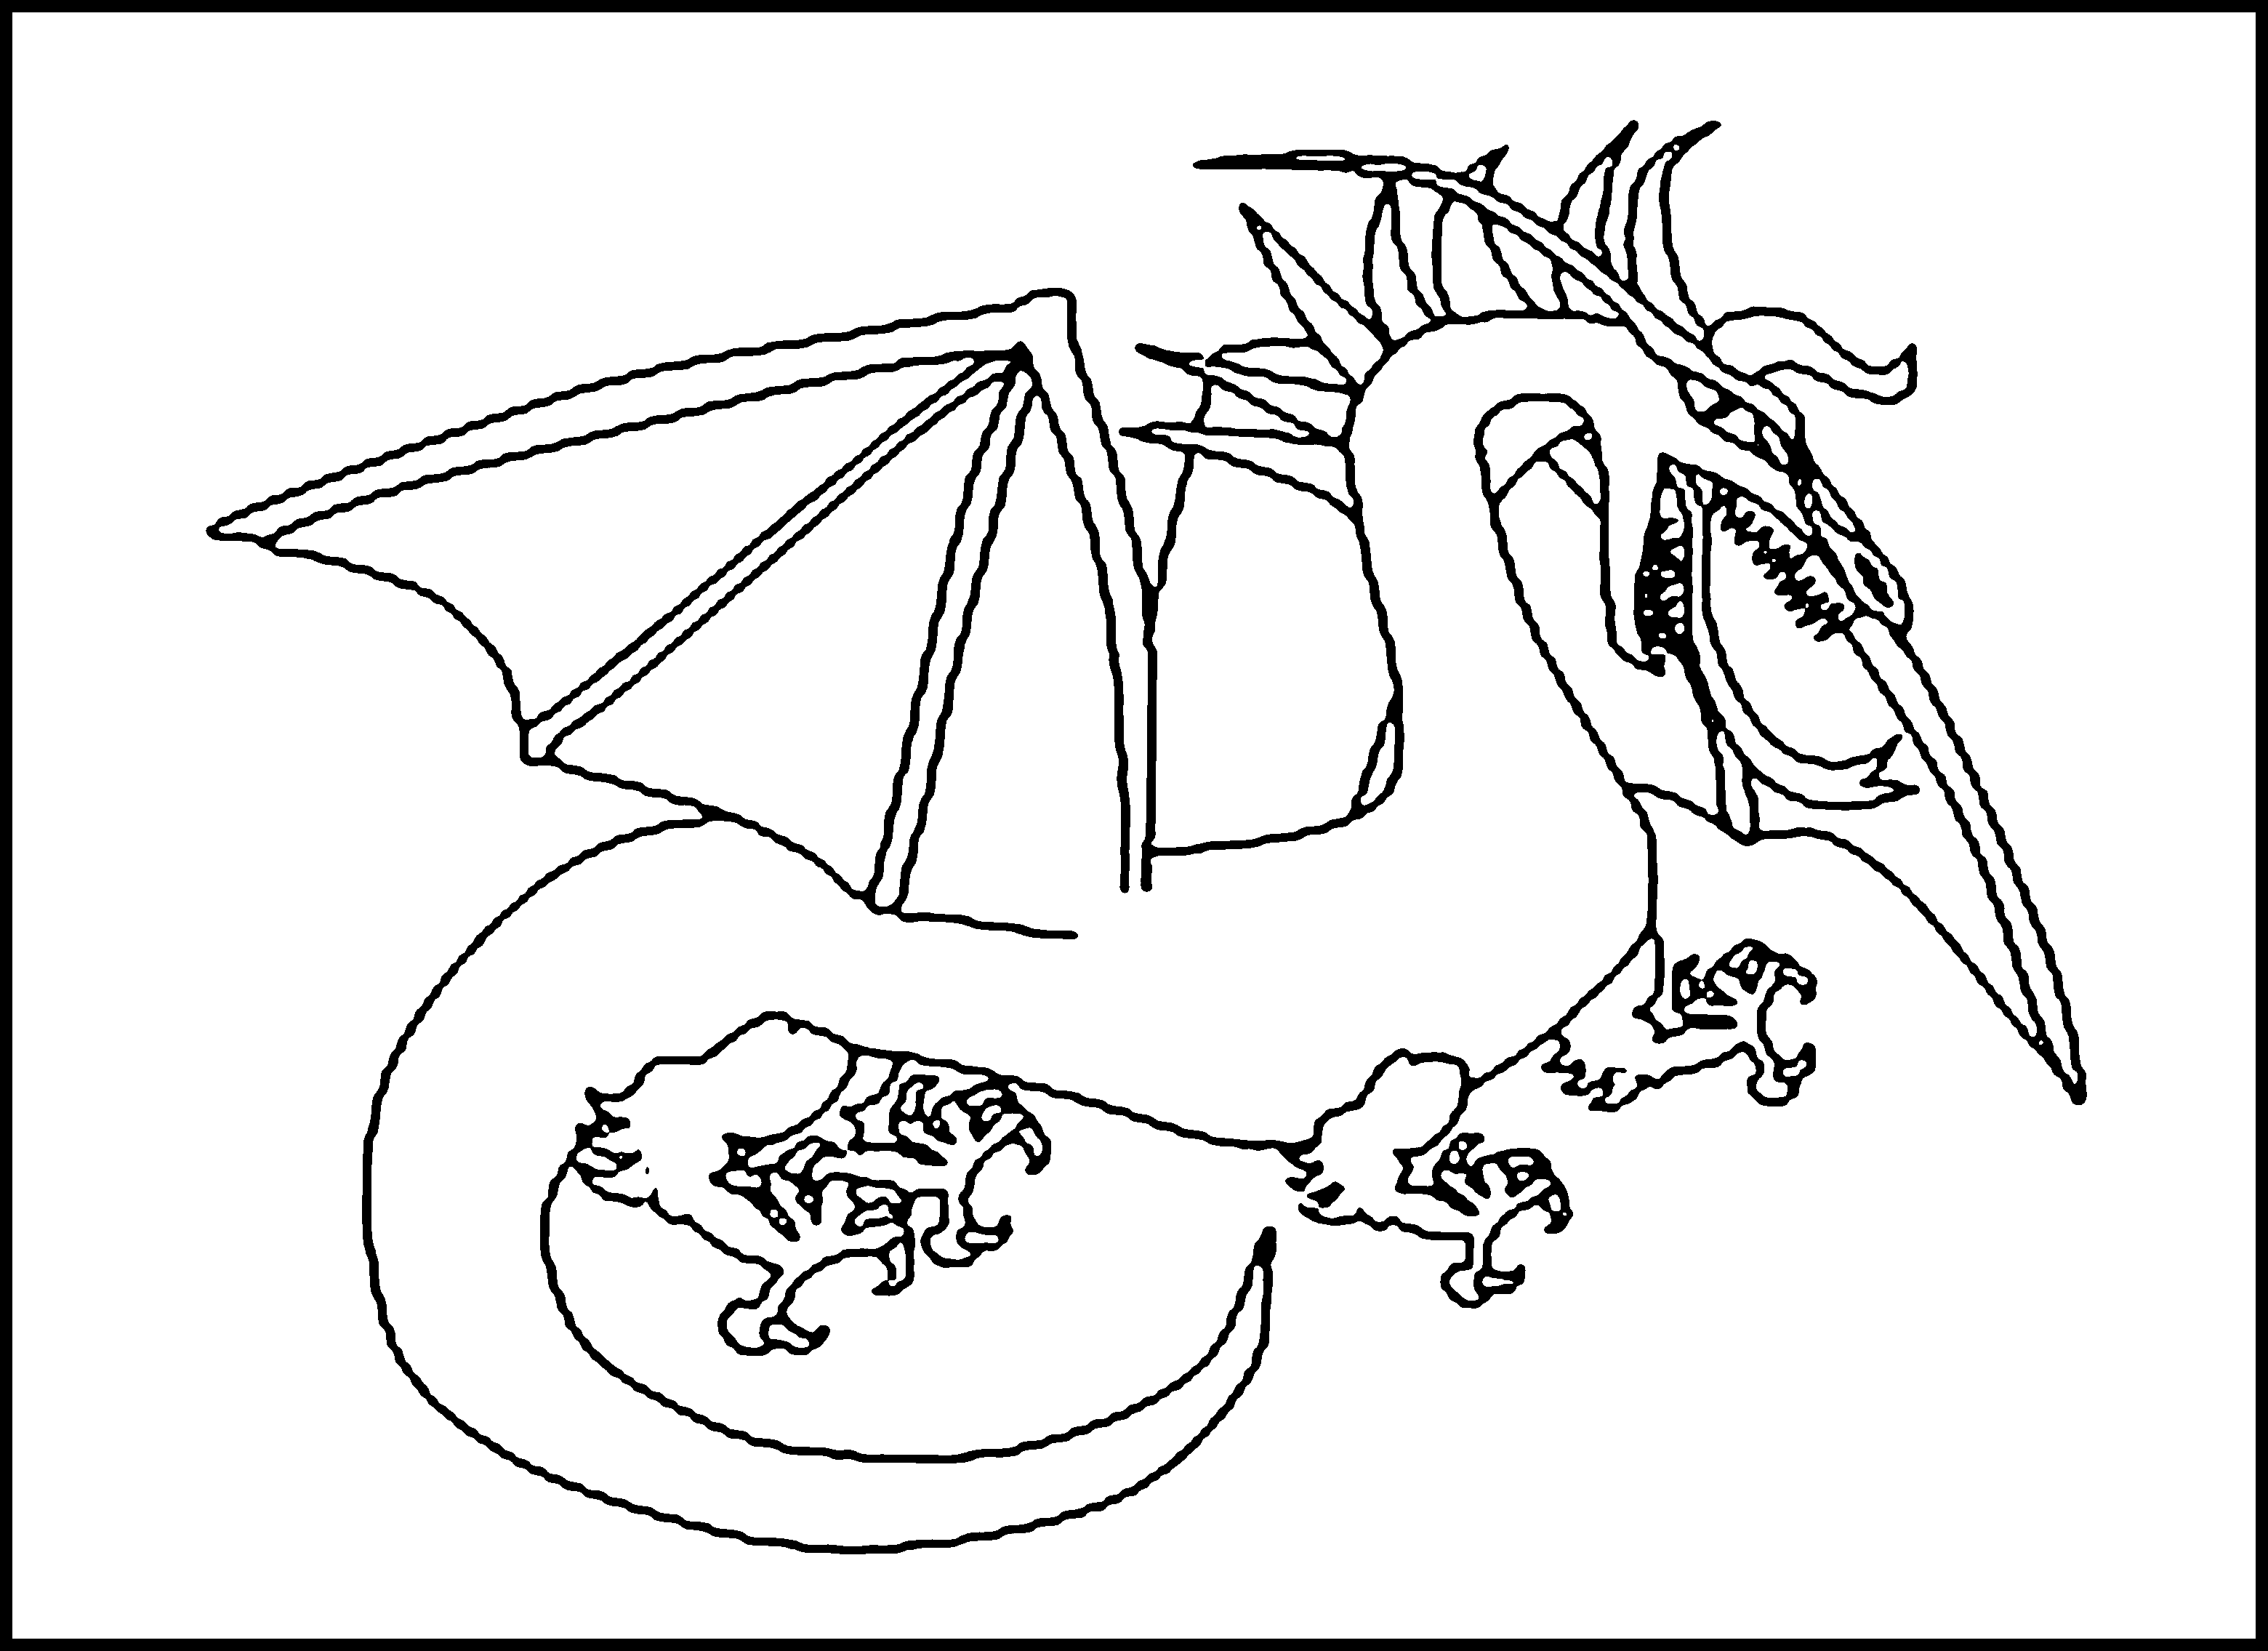 dragon-coloring-pages-printable-printable-world-holiday